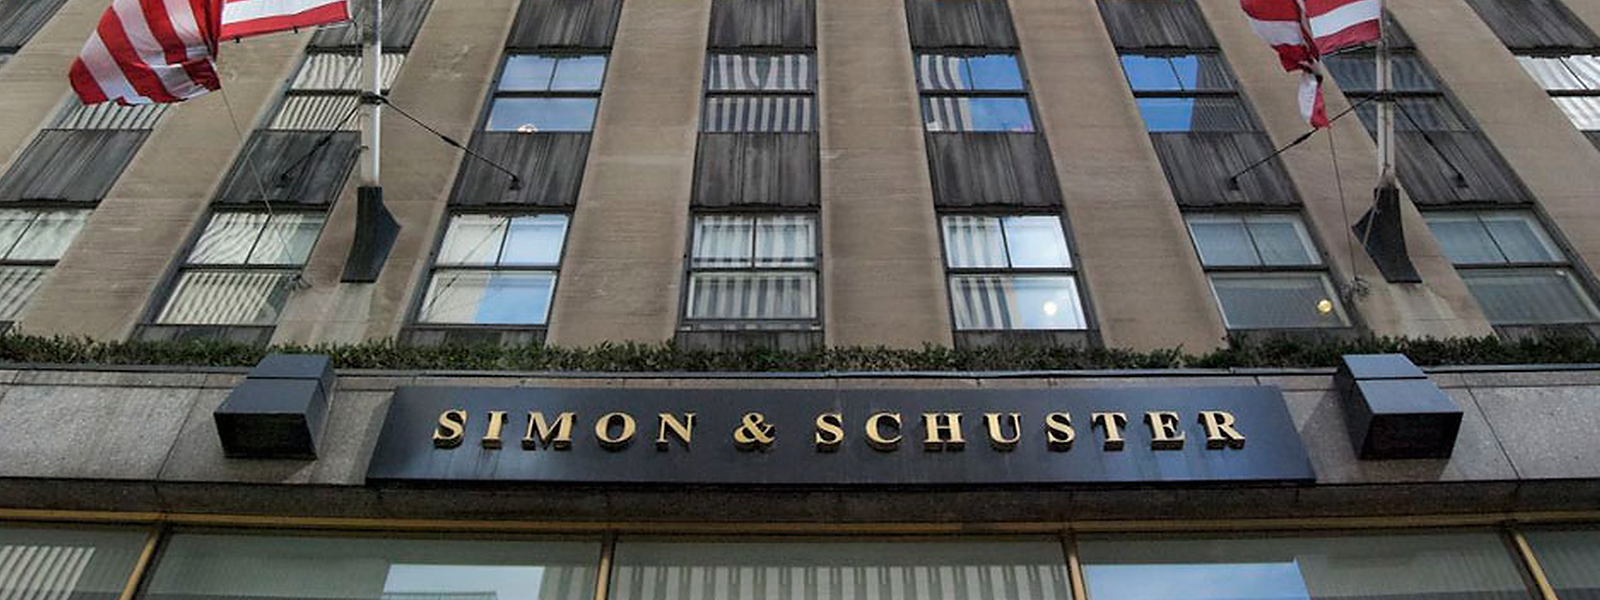 Der 1924 gegründete Verlag Simon & Schuster beschäftigt weltweit rund 1.500 Menschen und erwirtschaftete 2019 etwa 814 Millionen Dollar Umsatz.